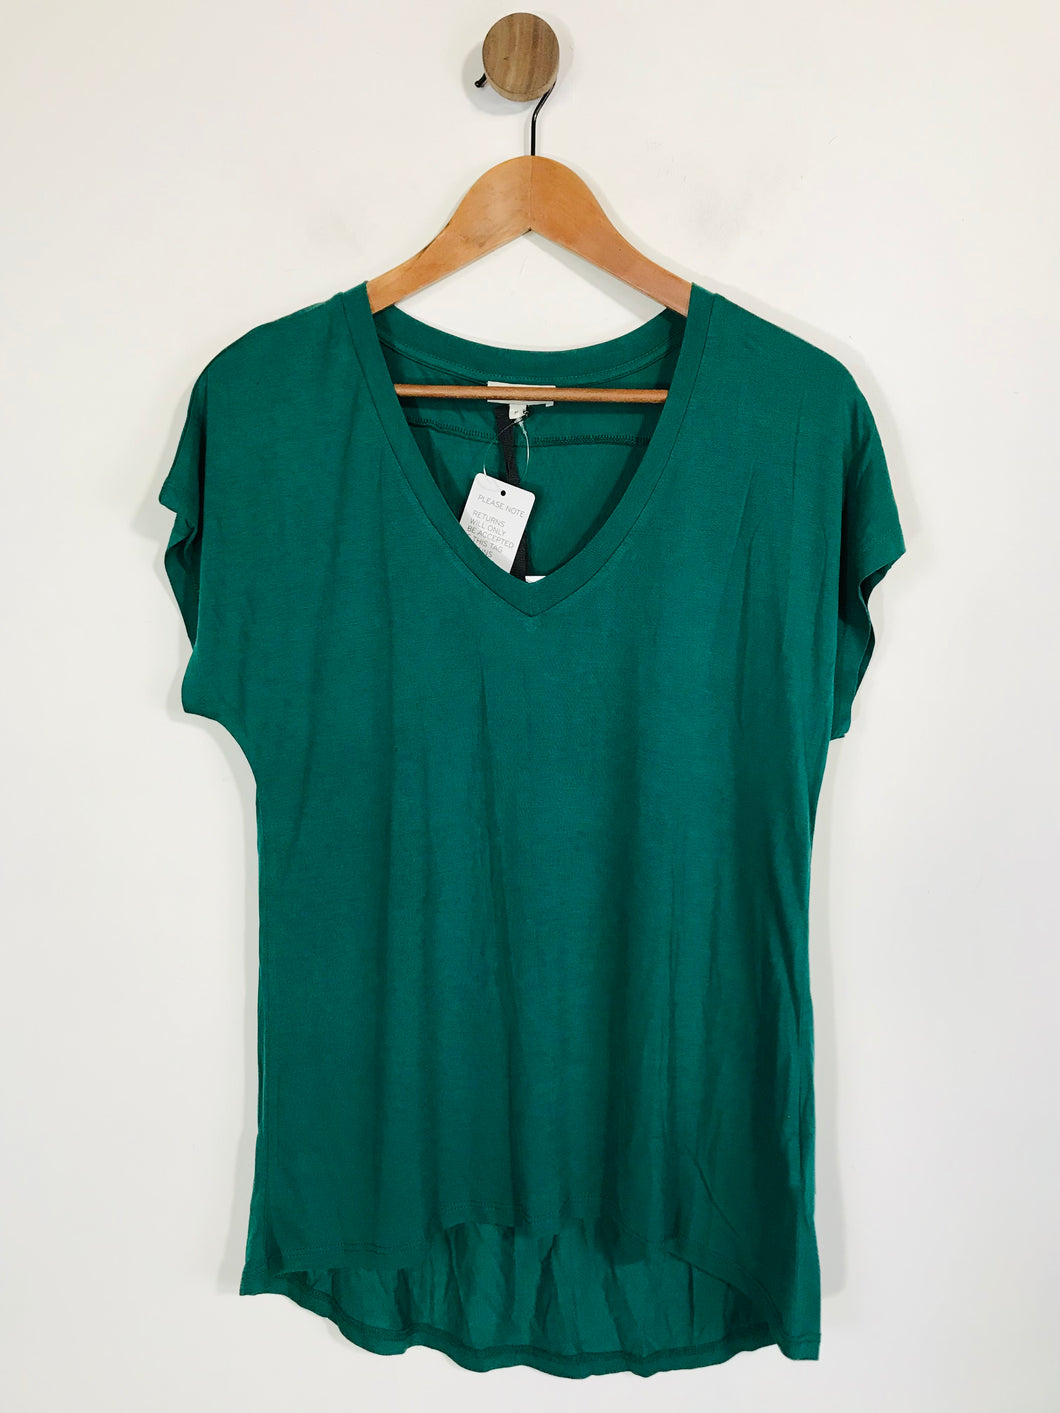 Reiss Women's V-Neck T-Shirt | M UK10-12 | Green